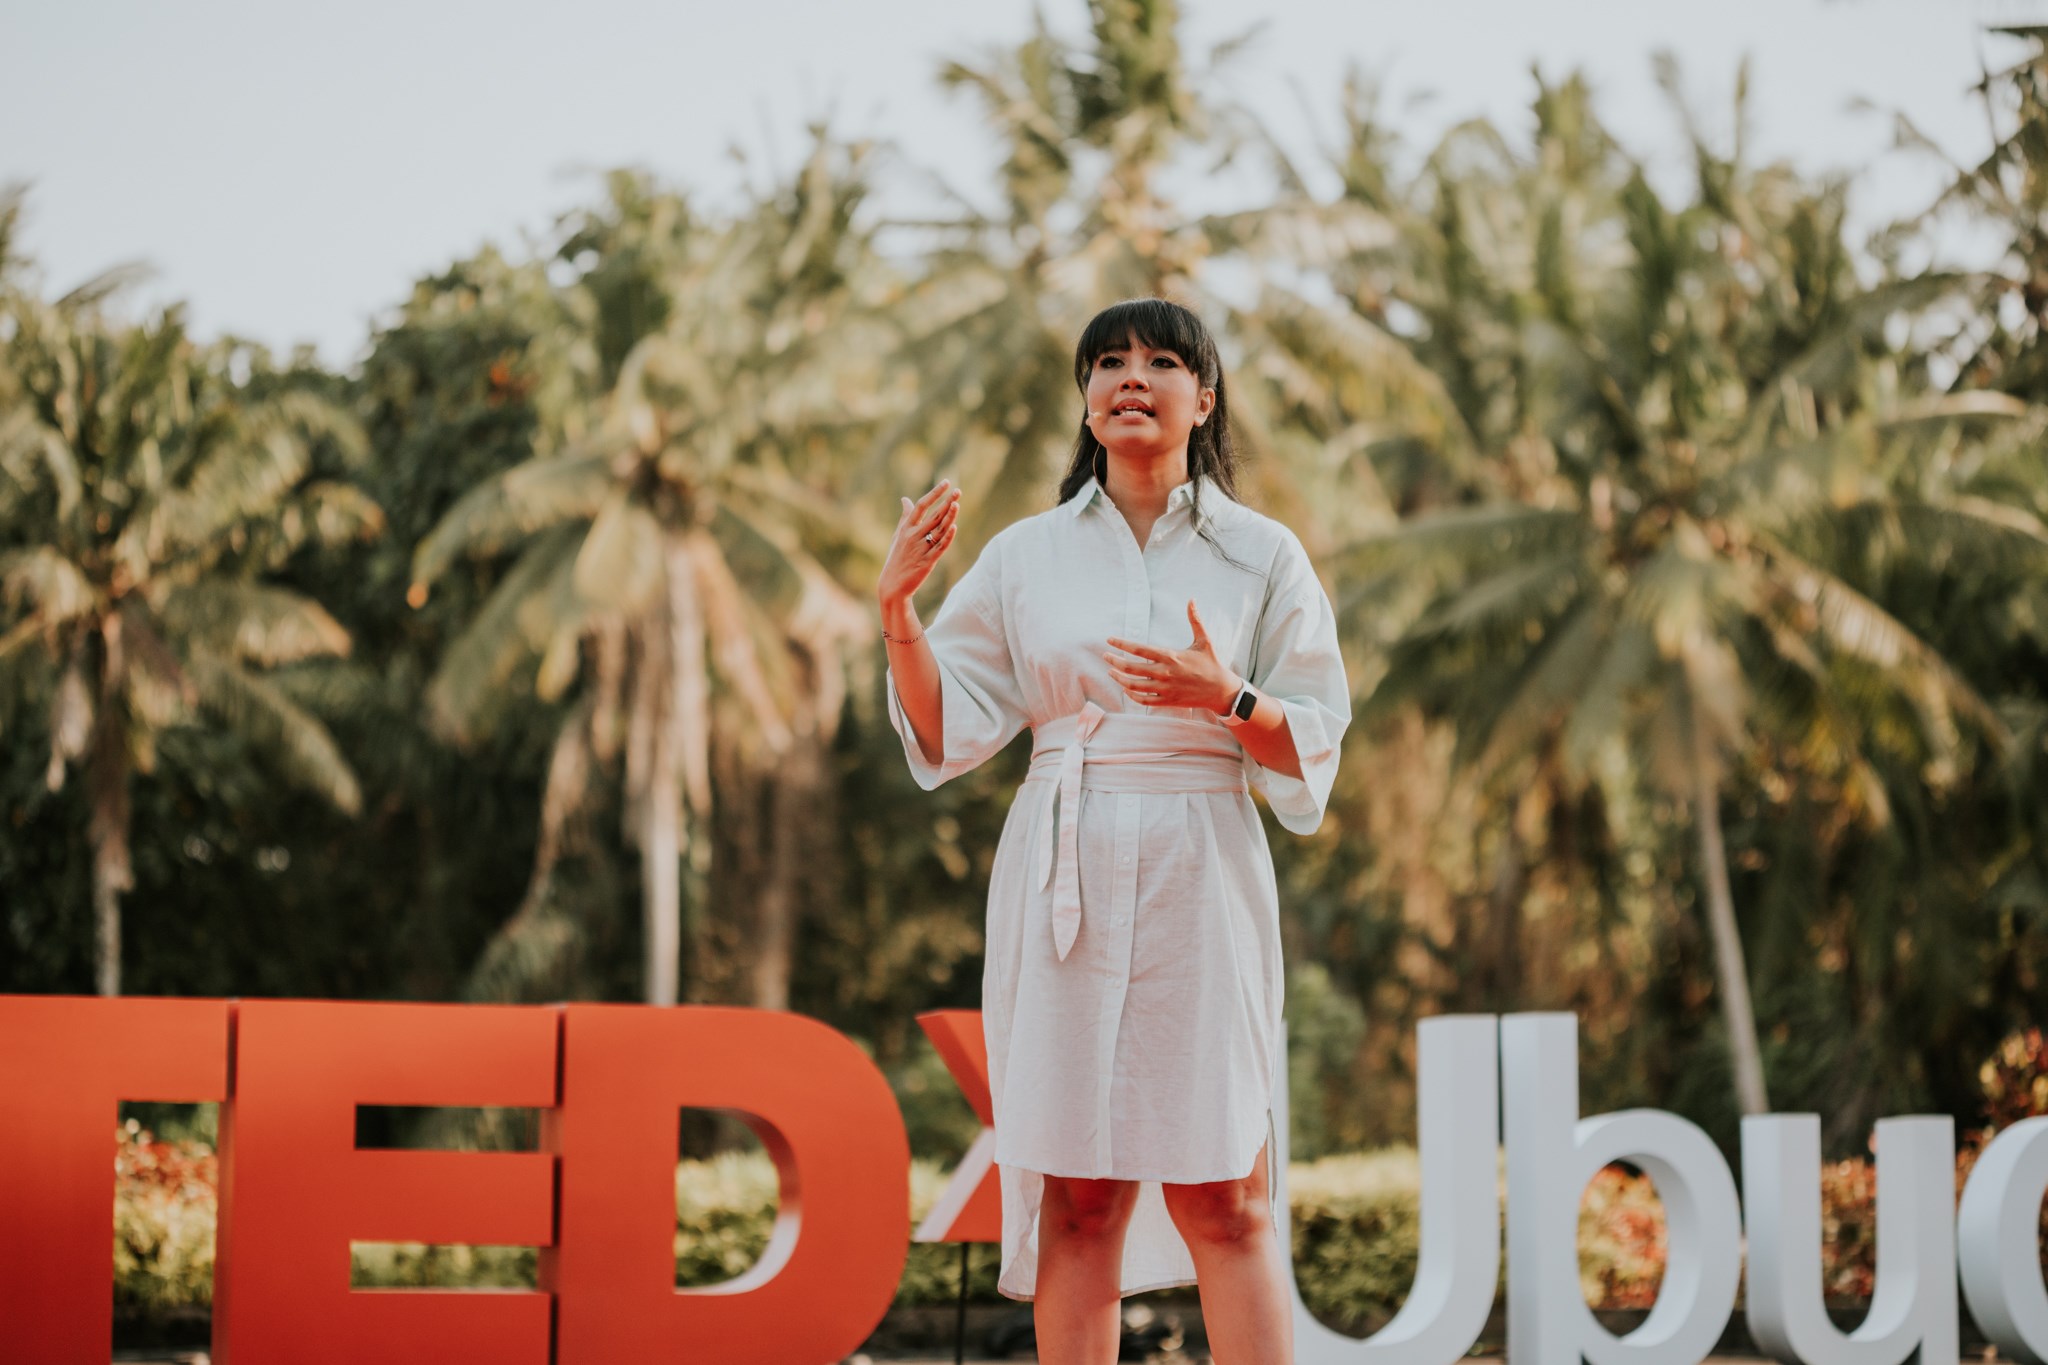 Saras Dewi. Photo: Shayna Pitch and TEDxUbud